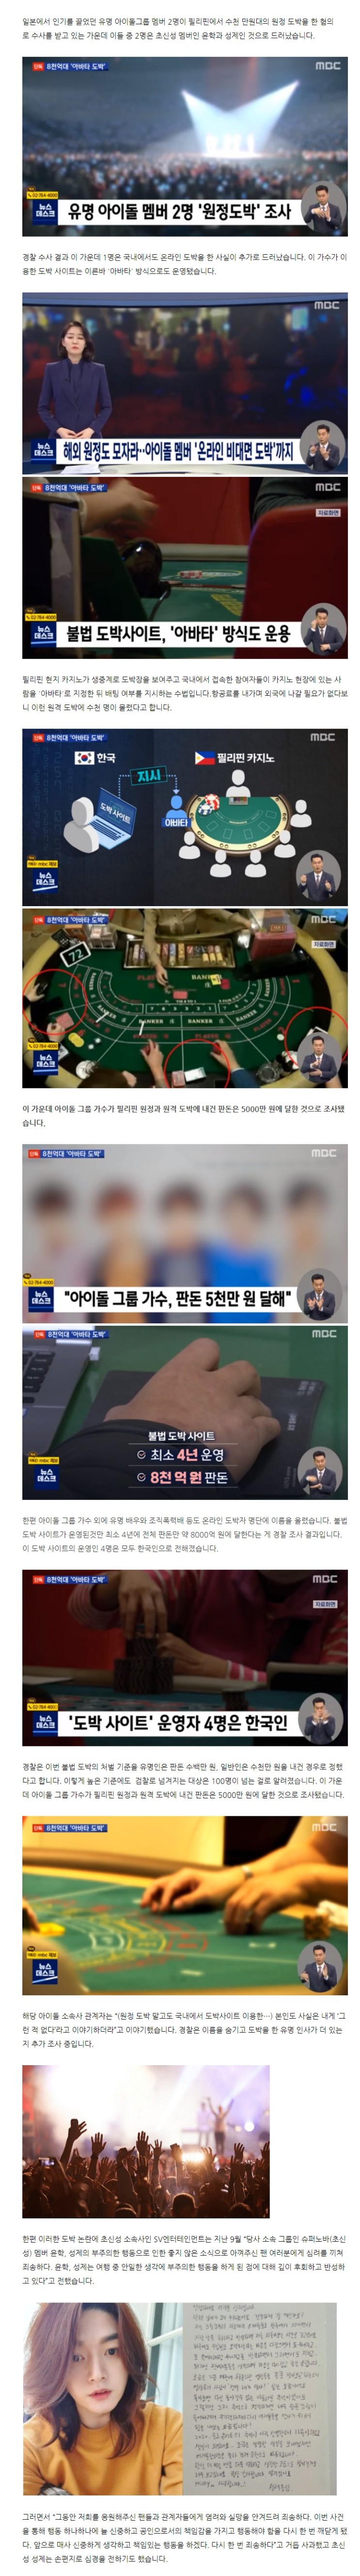 유명 아이돌 멤버, 원정 도박 이어 '아바타 도박' 까지... 누구? 초신성 윤학 성제